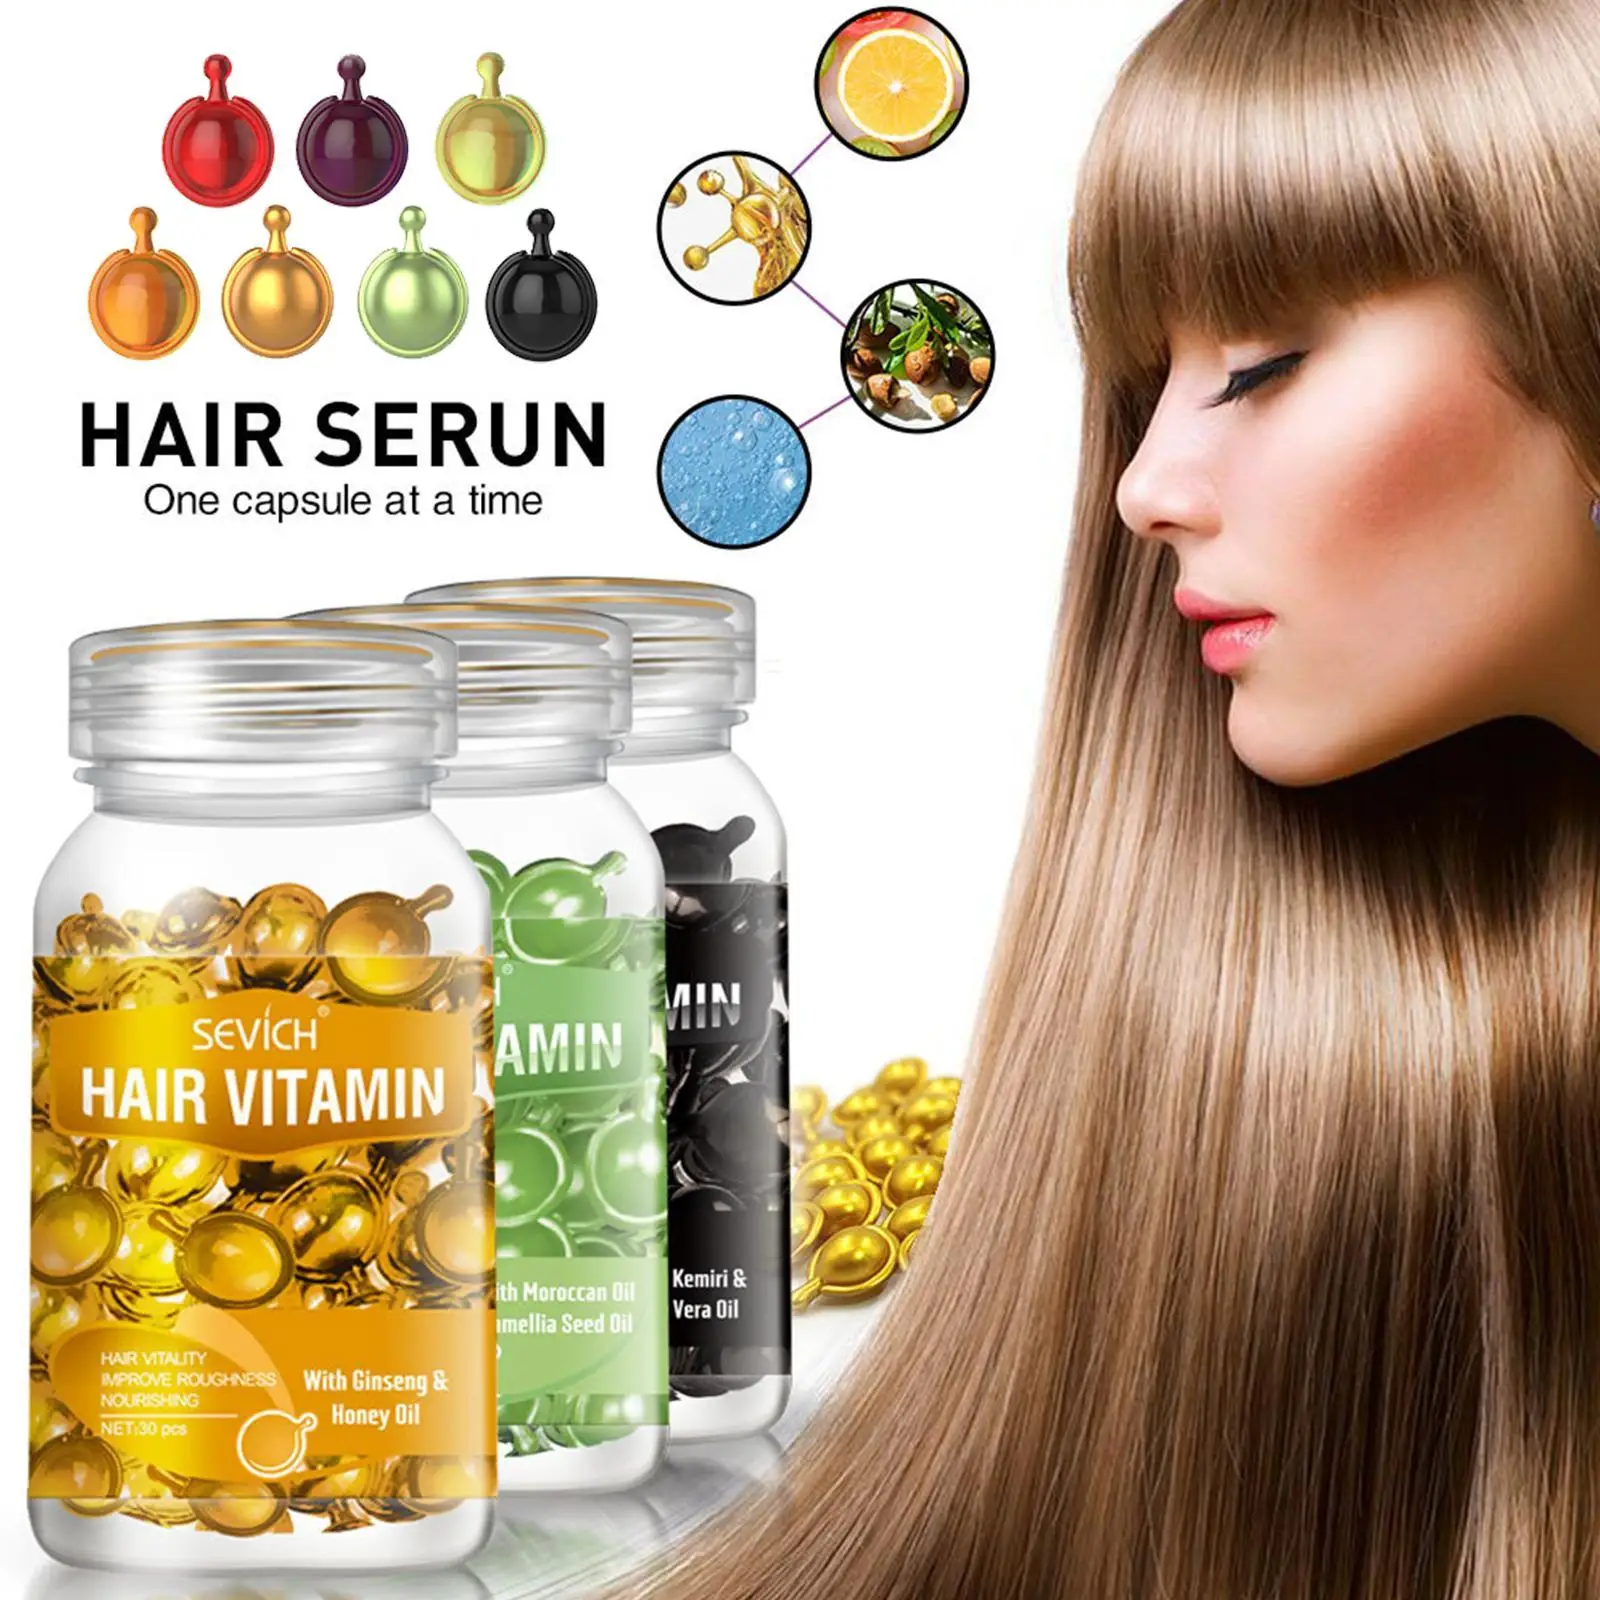 

30 шт. масло для восстановления волос, натуральный экстракт, питательная сыворотка для лечения волос, профессиональное Кератиновое комплексное масло